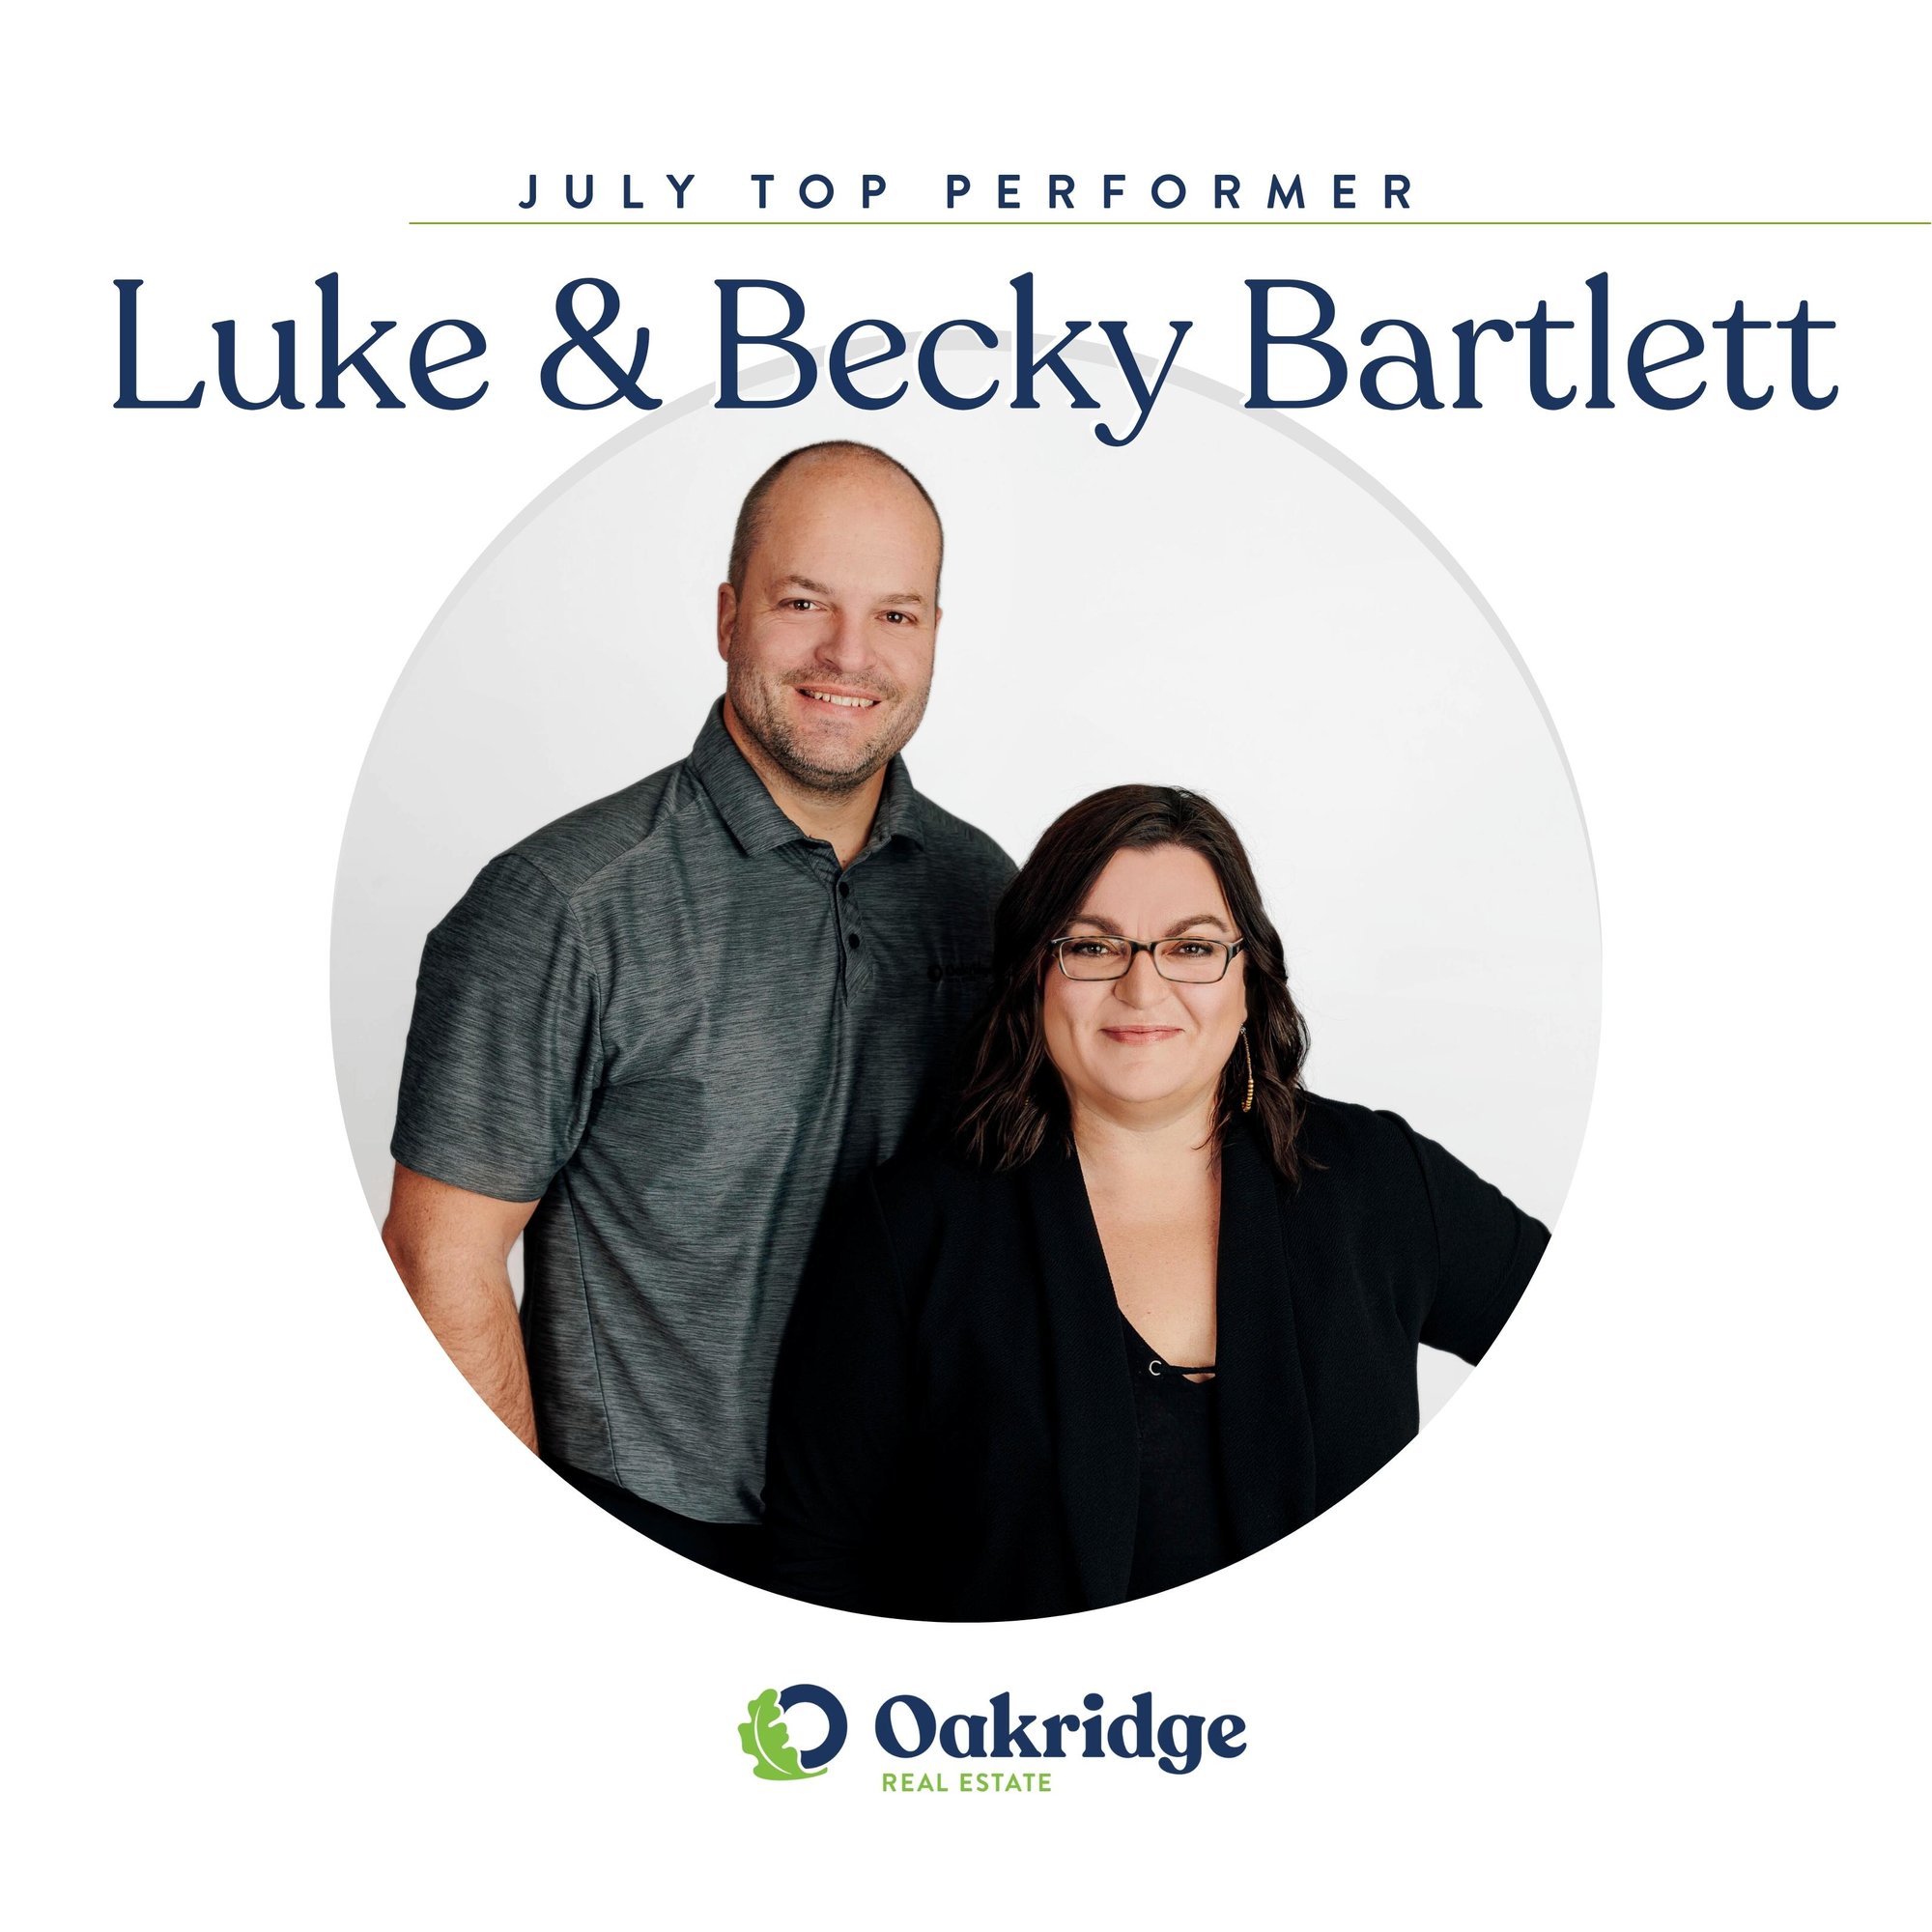 Luke and Becky Bartlett July Top Performer | Oakridge Real Estate